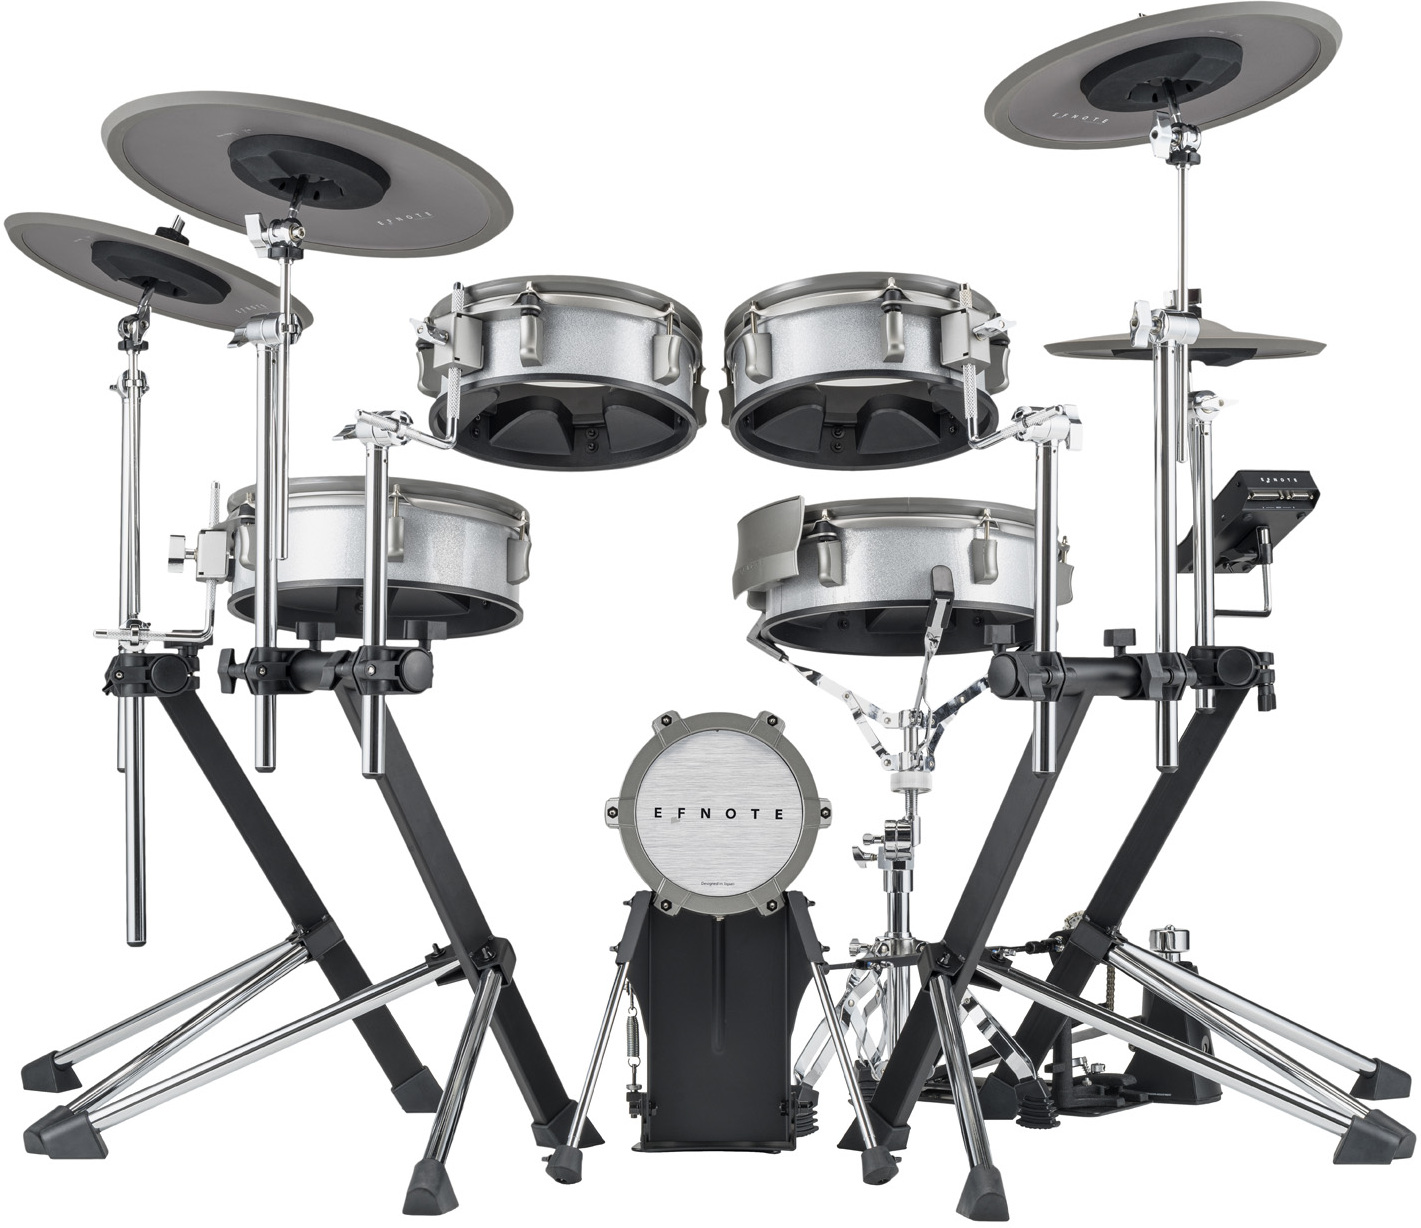 Efnote Efd3 Drum Kit - Elektronisch drumstel - Main picture